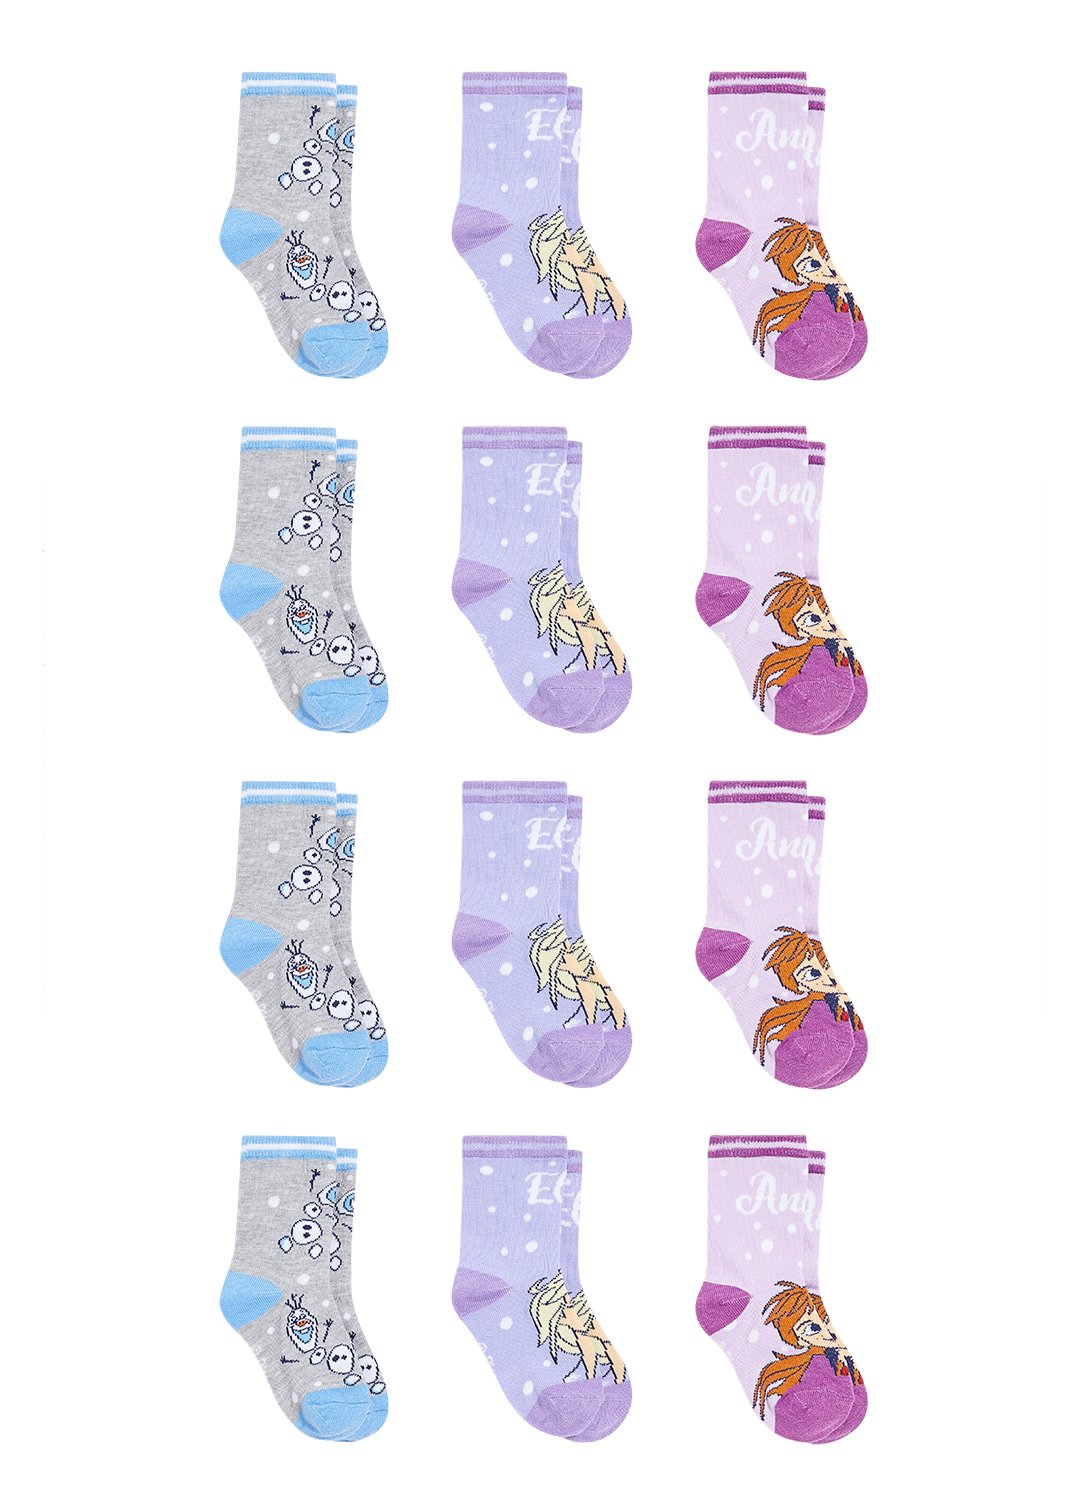 12 Girls Socks with Frozen 2 motifs